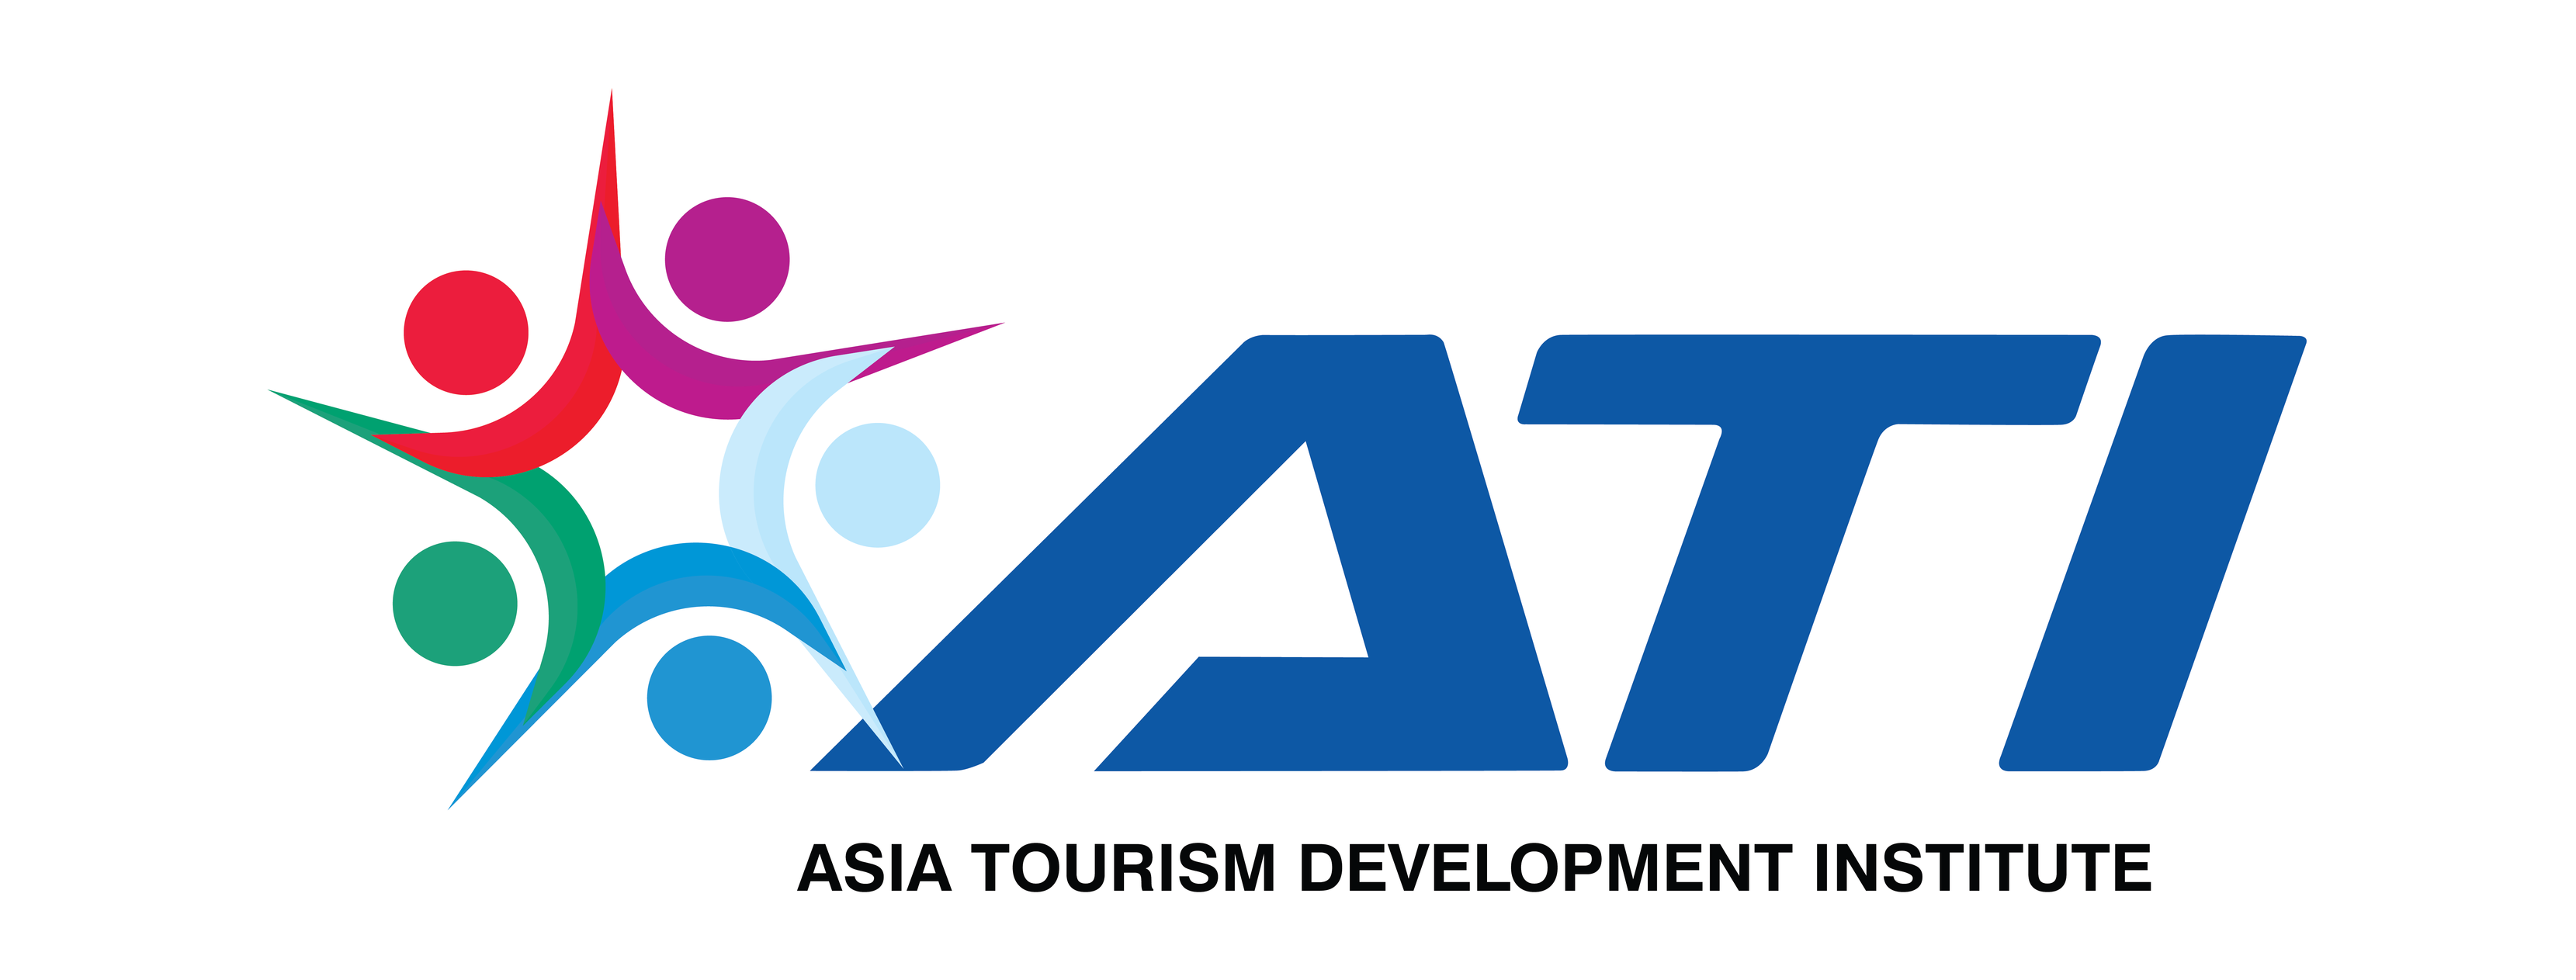 ASIA TOURISM DEVELOPMENT INSTITUTE